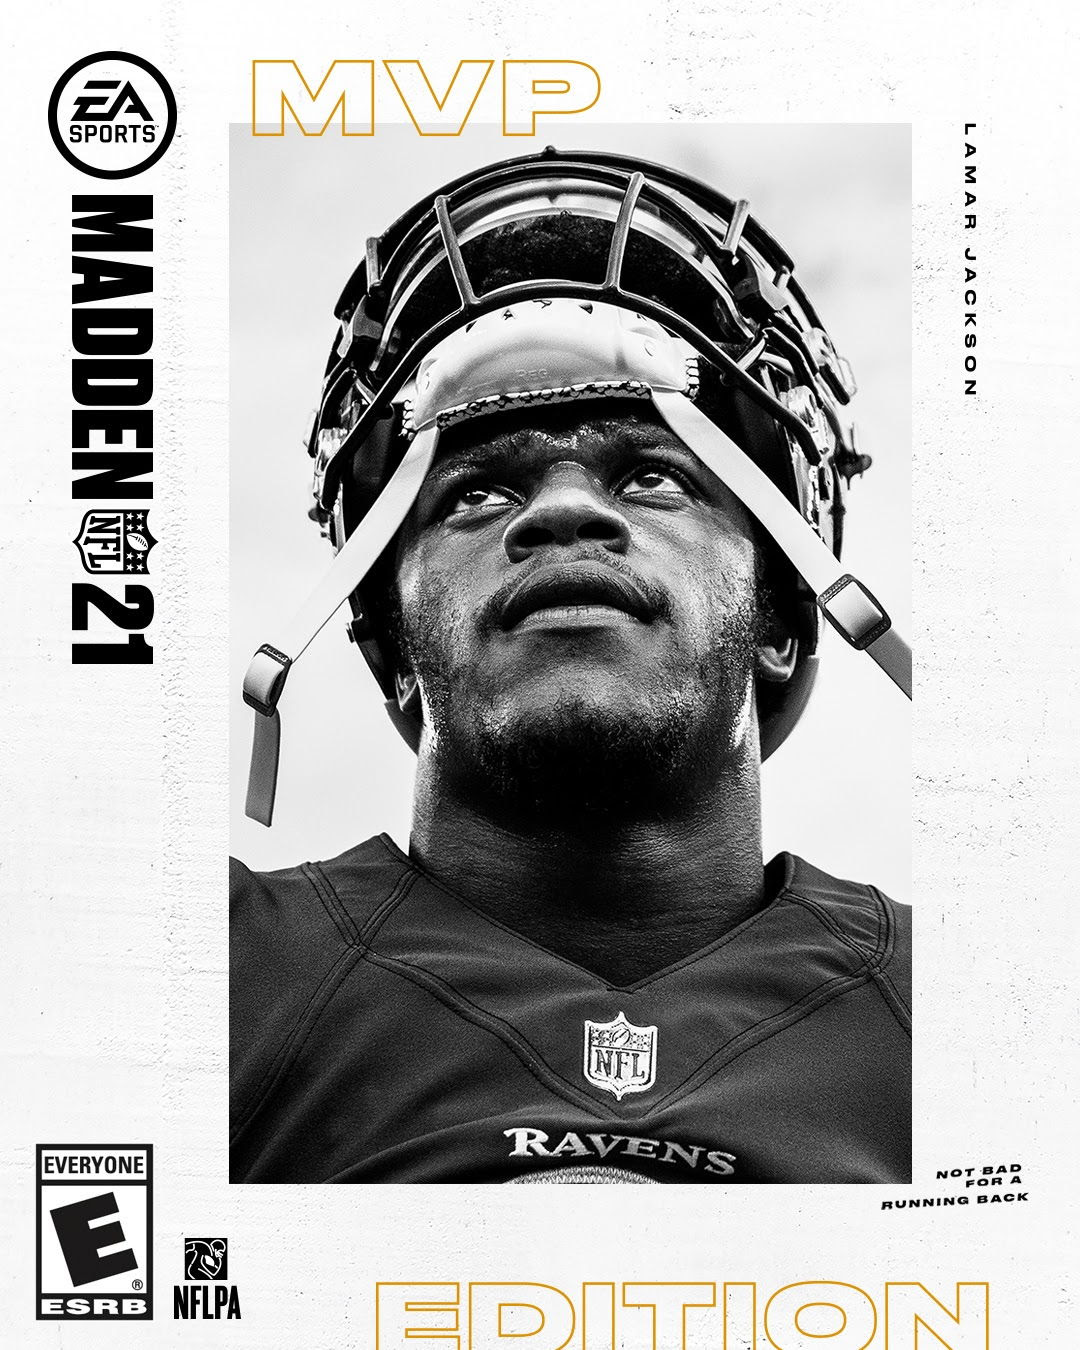 EA SPORTS DEVOILE MADDEN NFL 21 AVEC LE MVP DE LA NFL LAMAR JACKSON SUR LA COVER